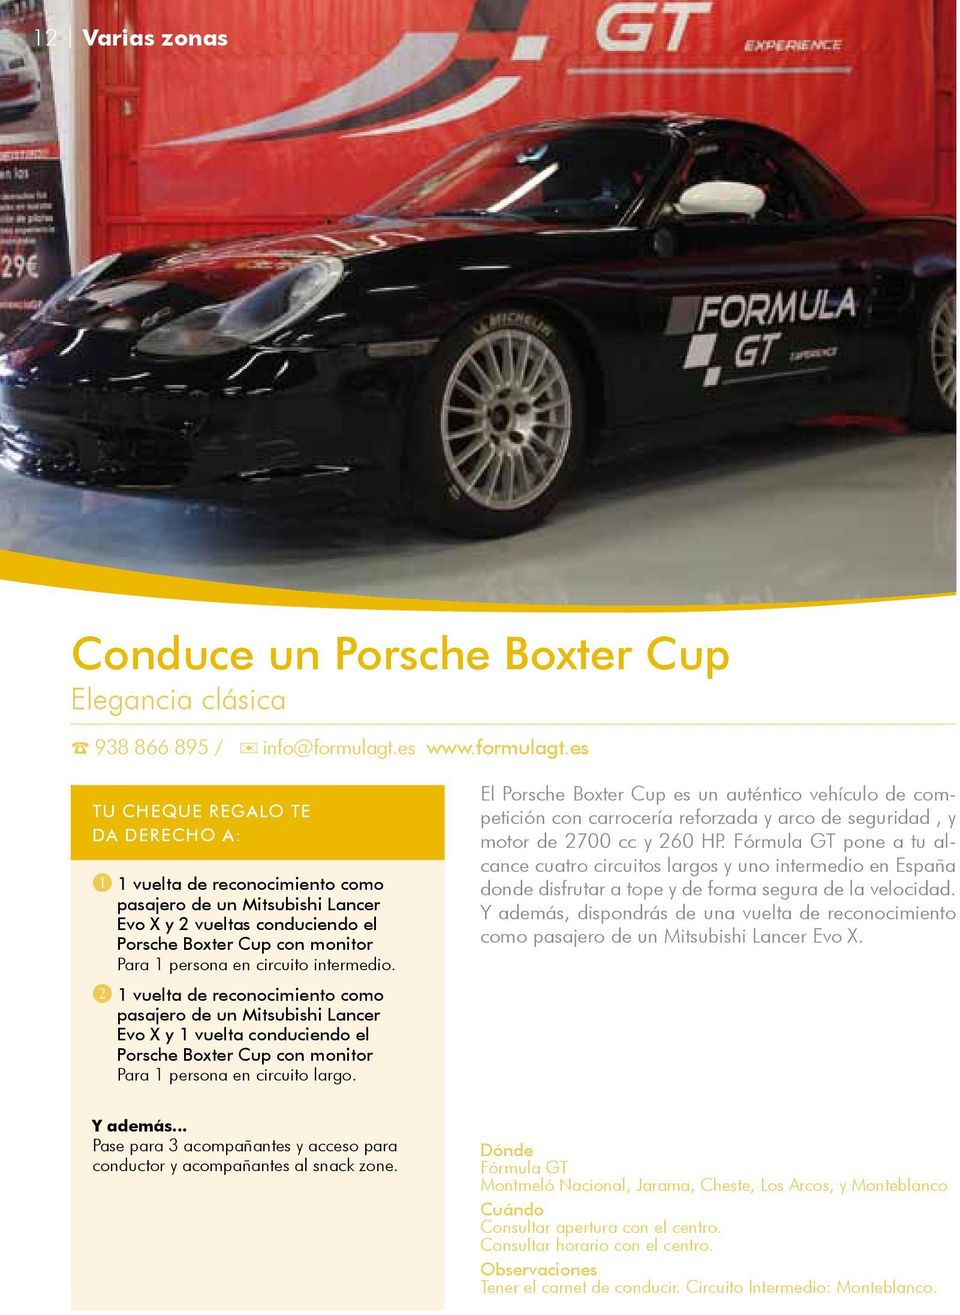 C 1 vuelta de reconocimiento como pasajero de un Mitsubishi Lancer Evo X y 1 vuelta conduciendo el Porsche Boxter Cup con monitor Para 1 persona en circuito largo.